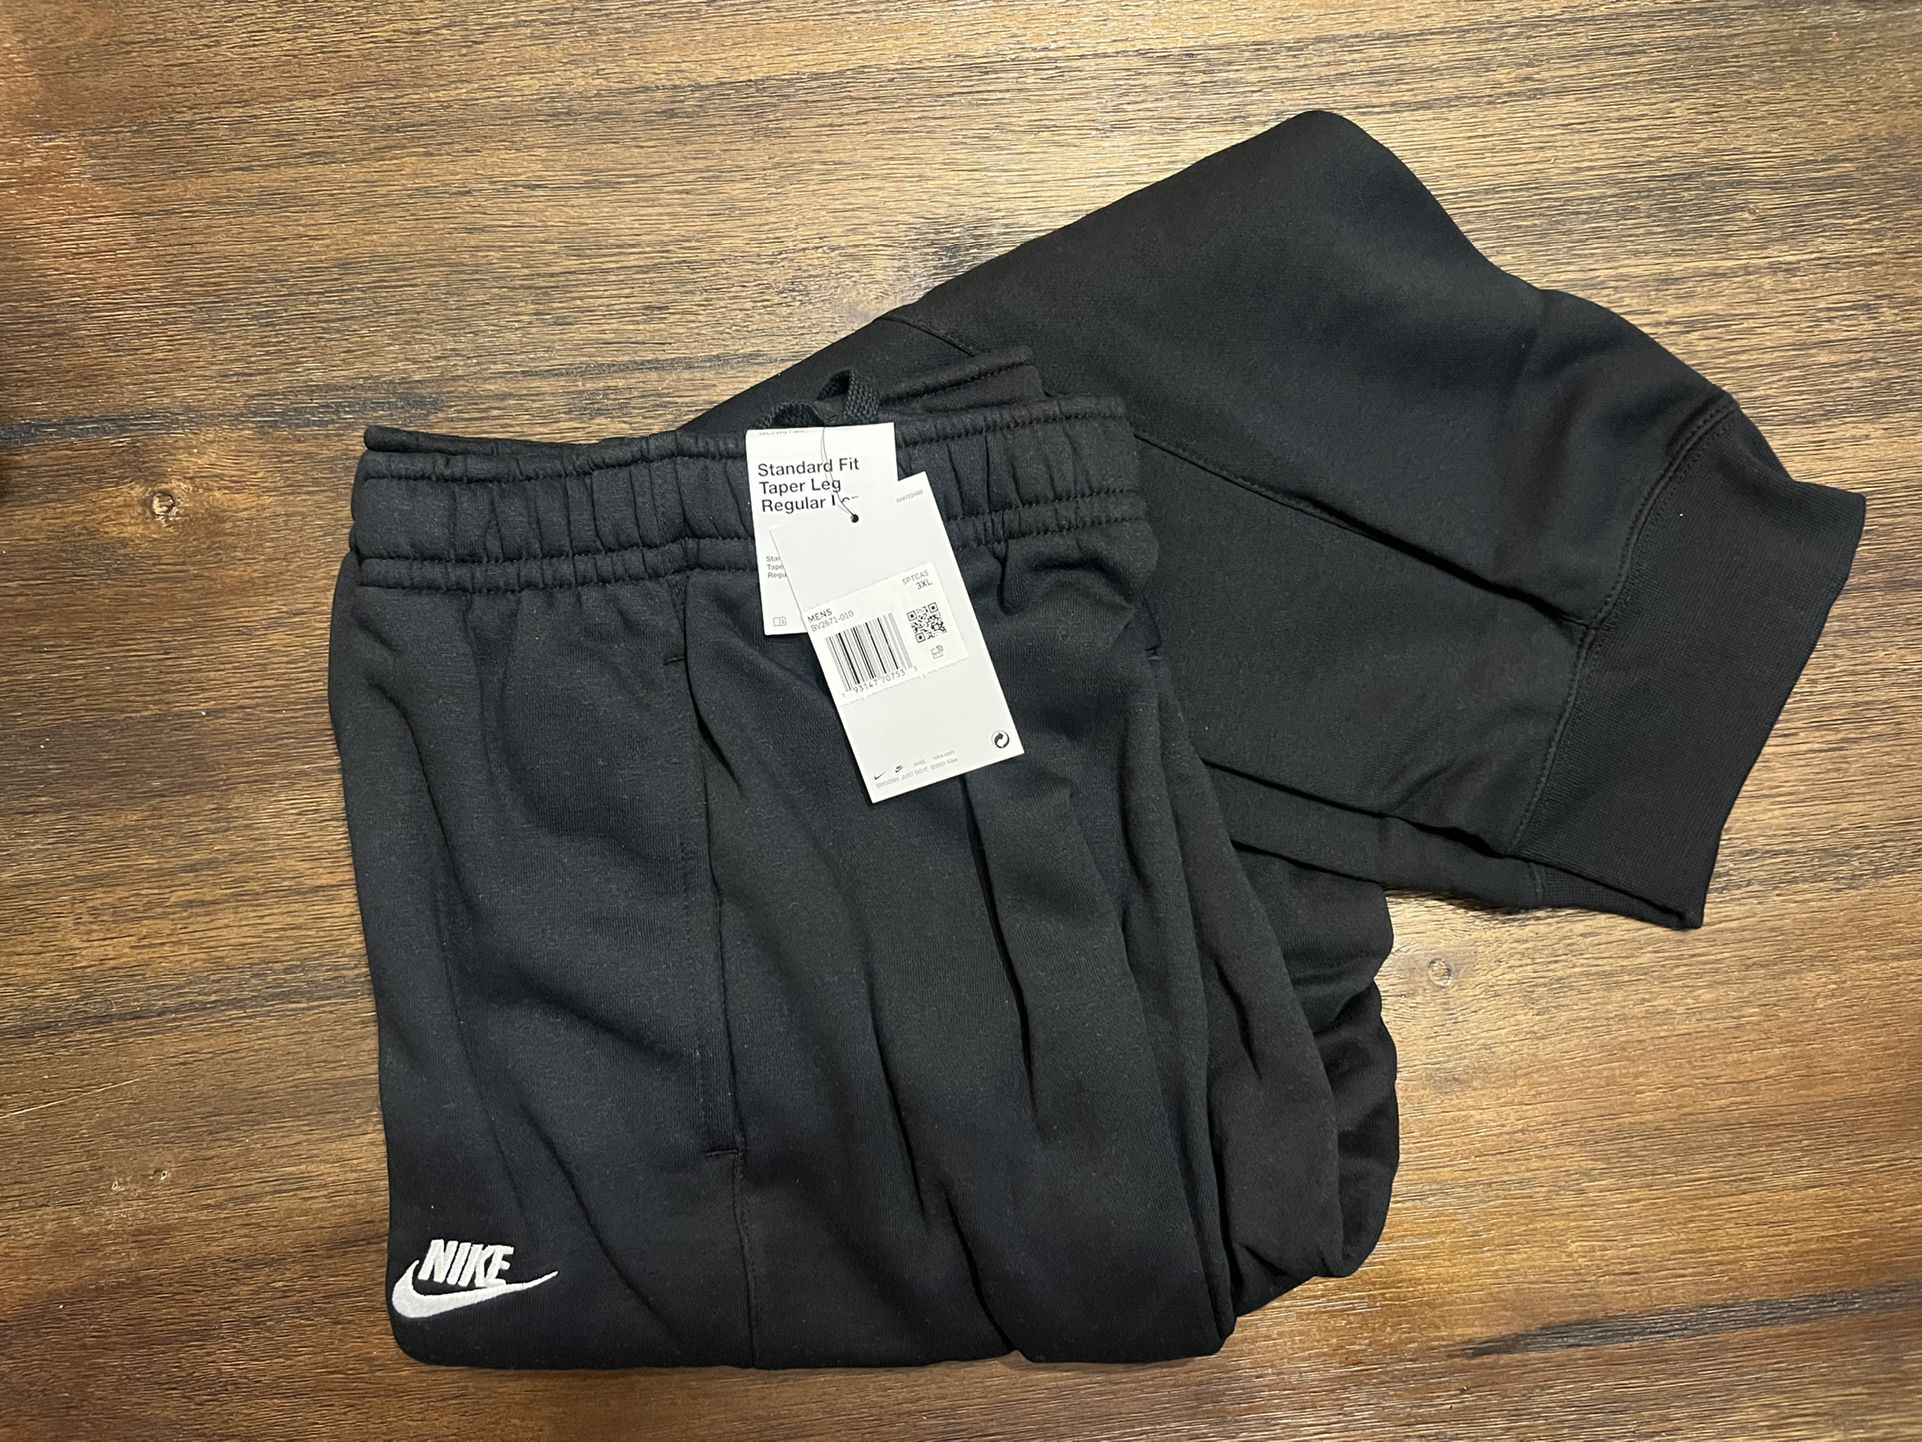 Ontoegankelijk Afwijking perspectief Men's Nike Sweat Pants Size XXXL for Sale in Camarillo, CA - OfferUp